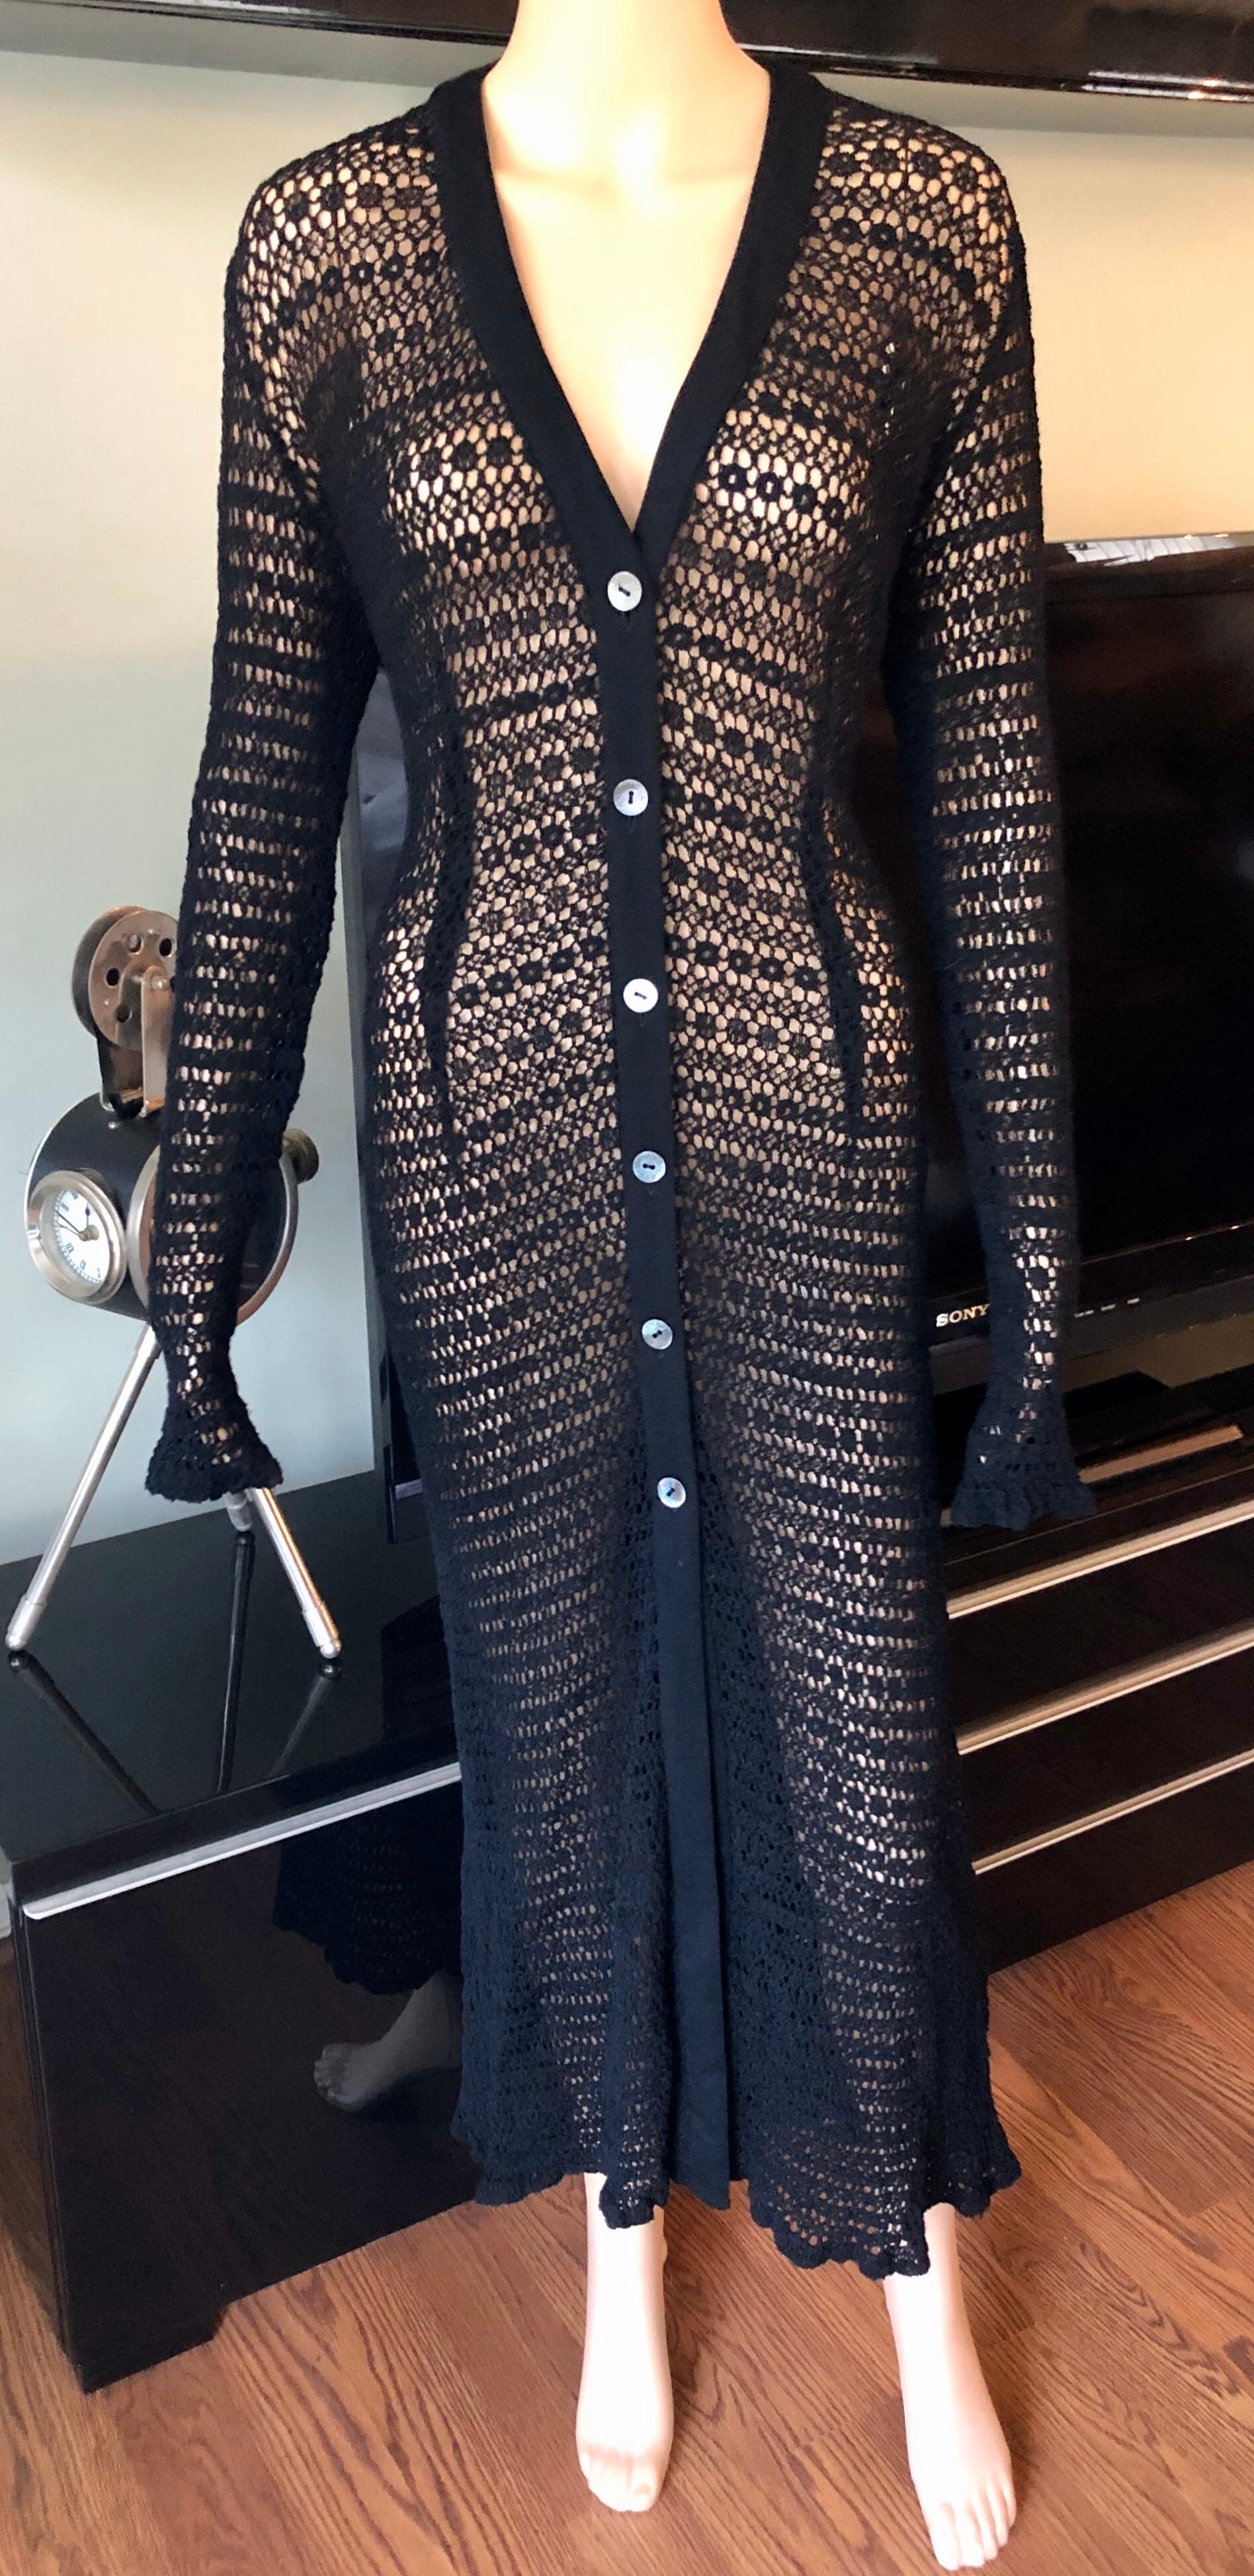 Dolce & Gabbana Vintage 1990's Sheer Open Knit Crochet Fishnet Black Maxi Dress M/L

Robe vintage Dolce & Gabbana avec encolure en V, fermeture par boutons au centre de l'encolure avant et maille ouverte. L'étiquette de taille a été retirée. Le